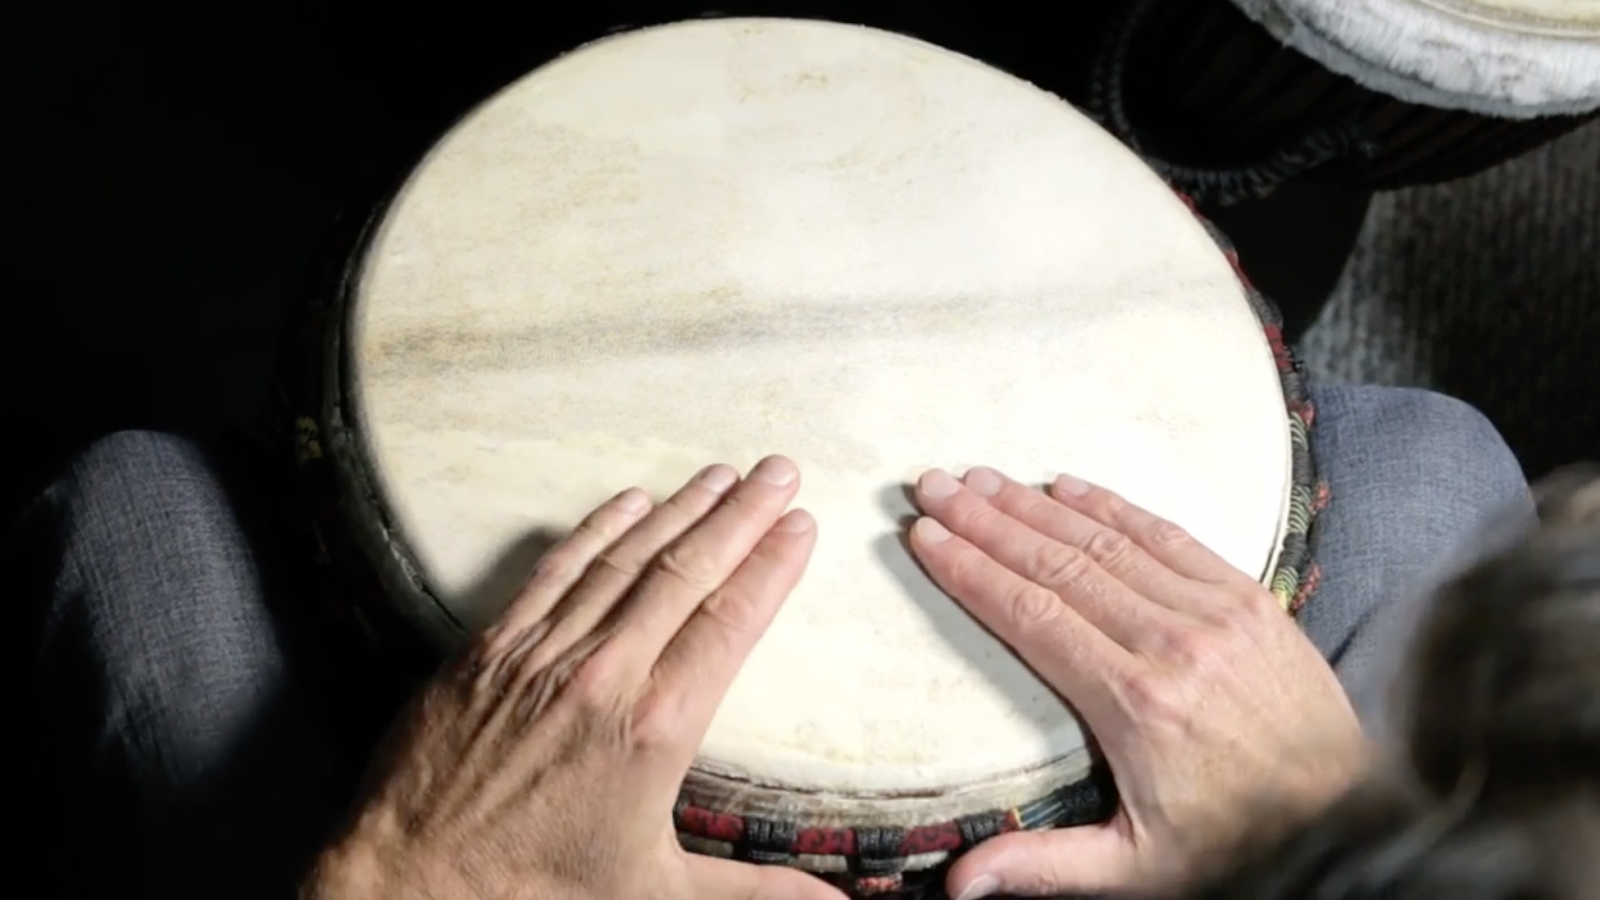 hands on drum